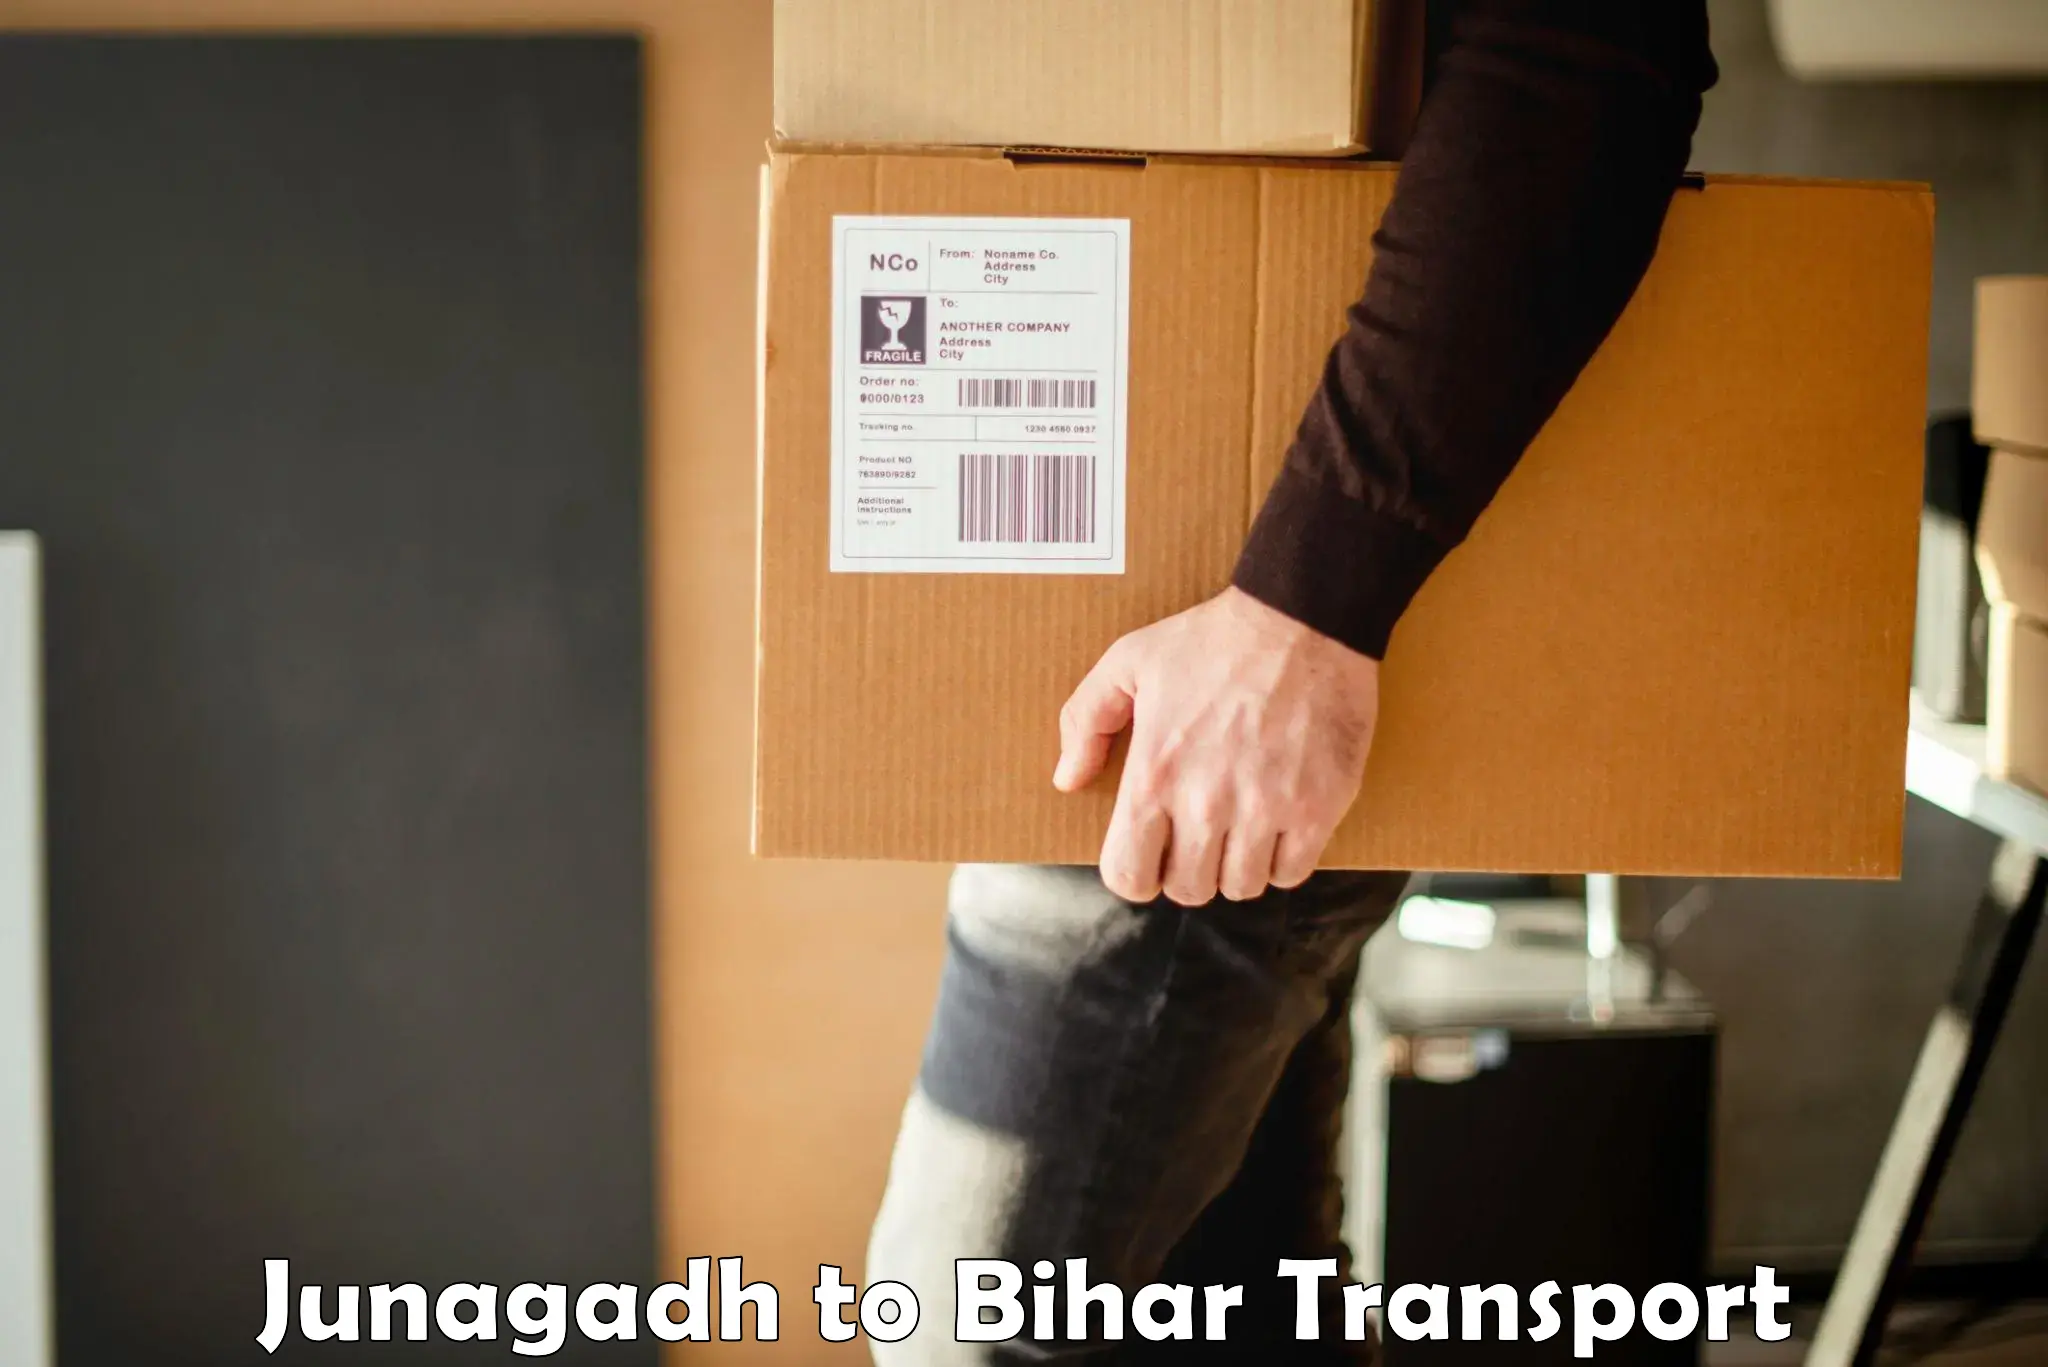 All India transport service Junagadh to Katihar